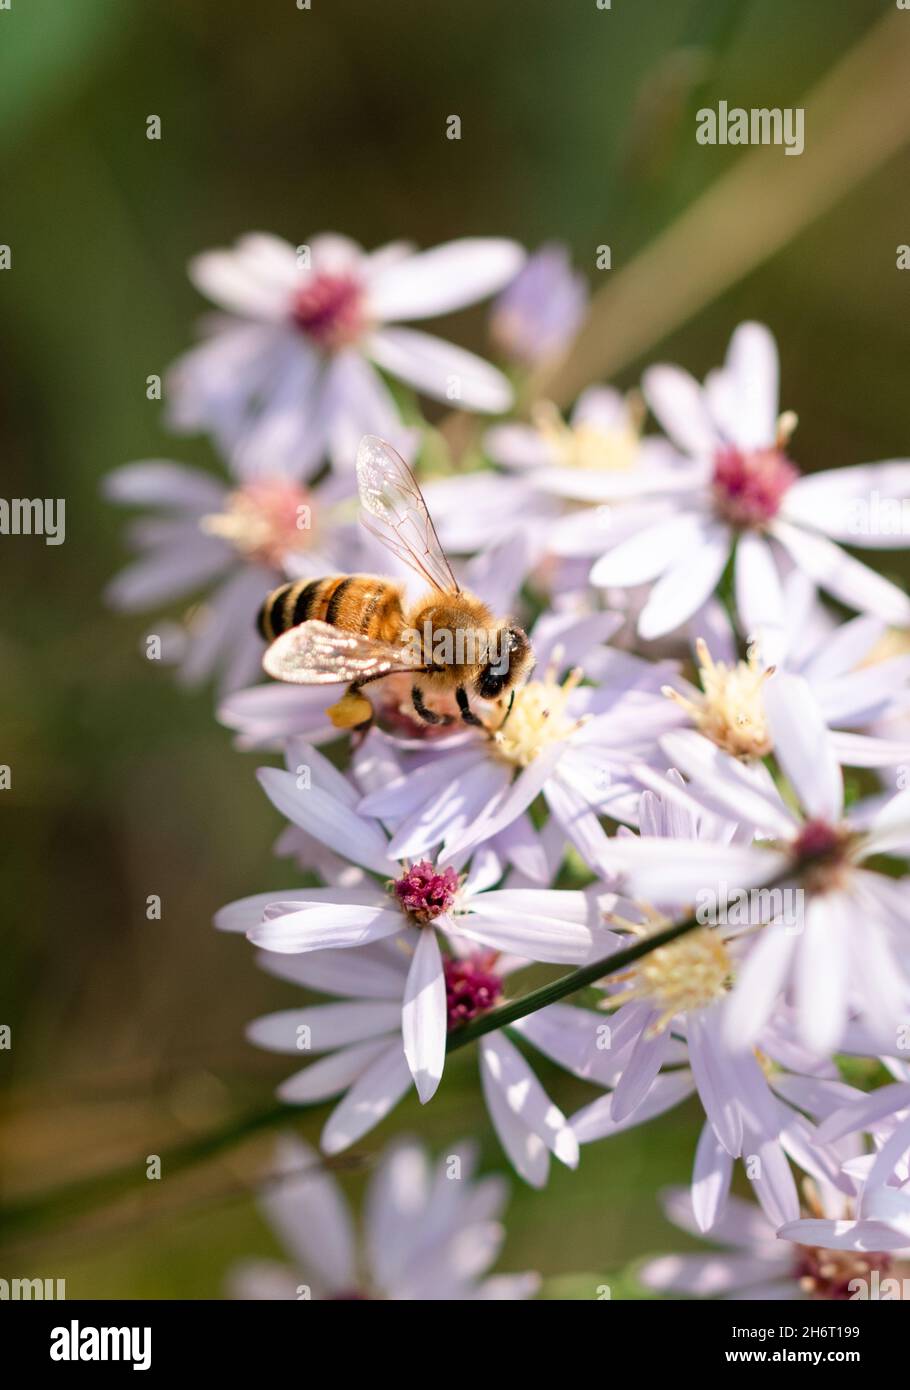 Gros plan d'une abeille rassemblant le pollen d'un bouquet de fleurs. Banque D'Images